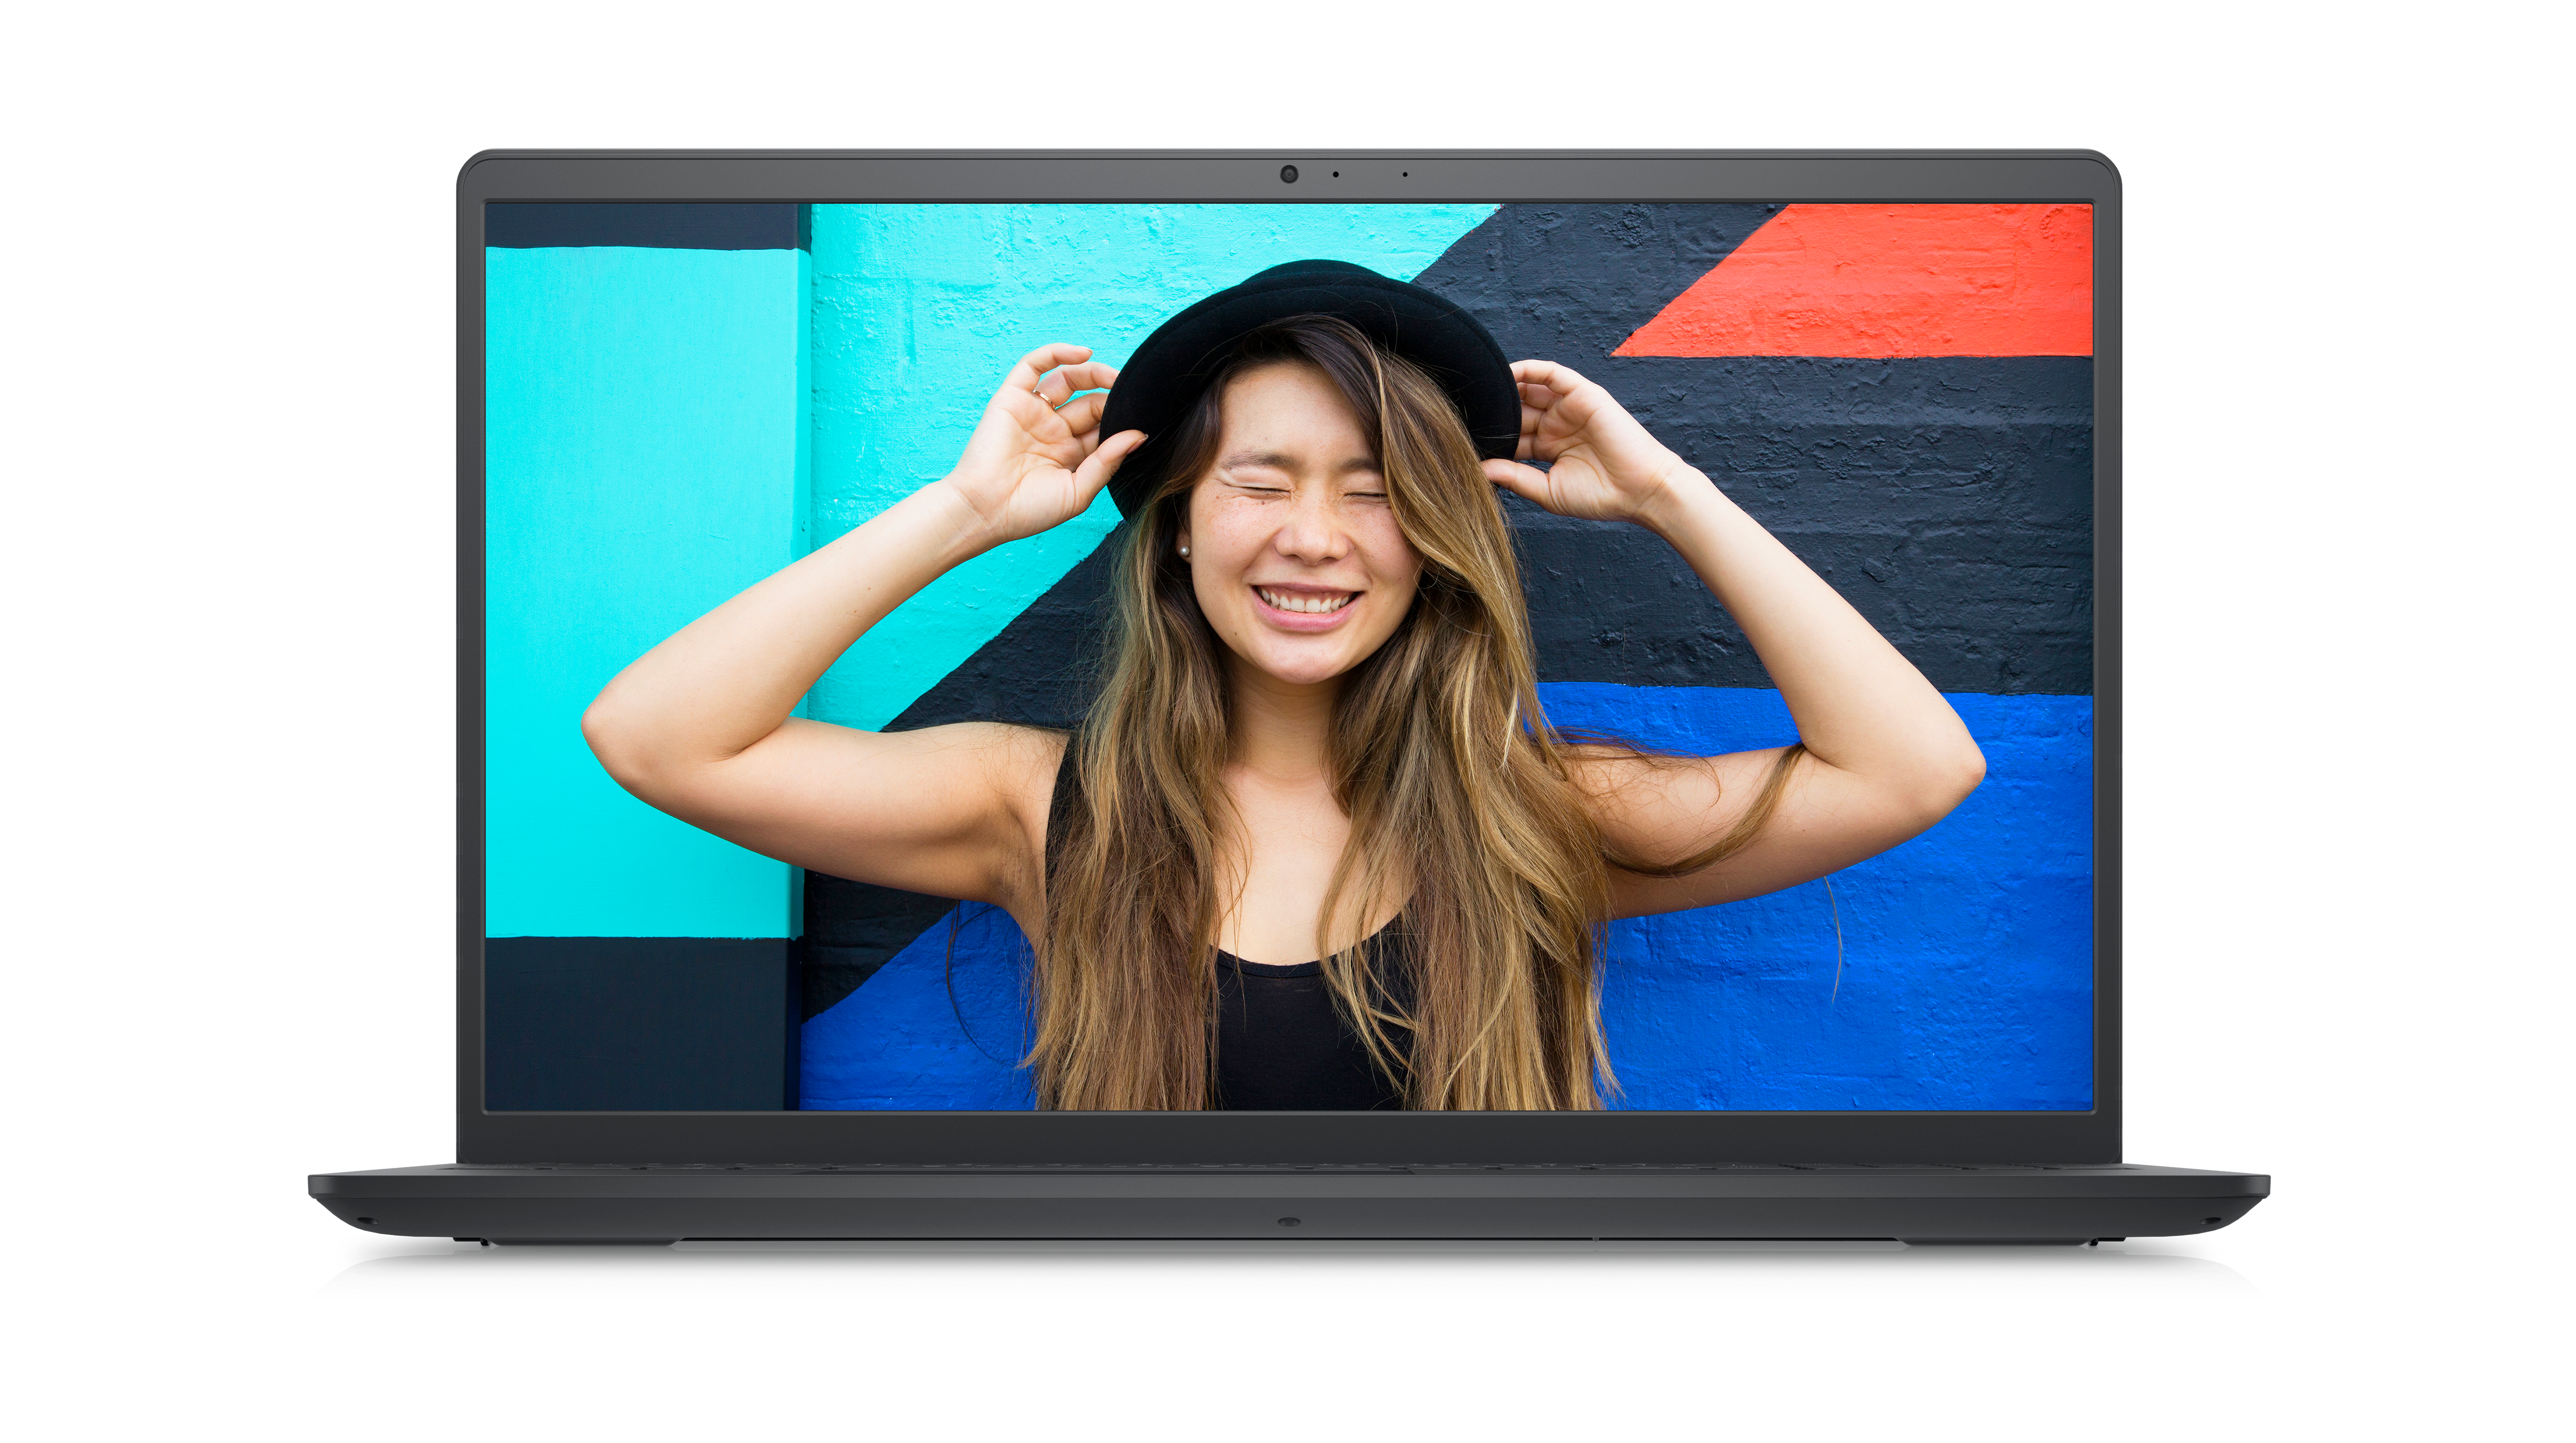 Bild eines Dell Inspiron 15 3520-Laptops mit einer lächelnden Frau mit schwarzem Hut und T-Shirt auf dem Bildschirm.